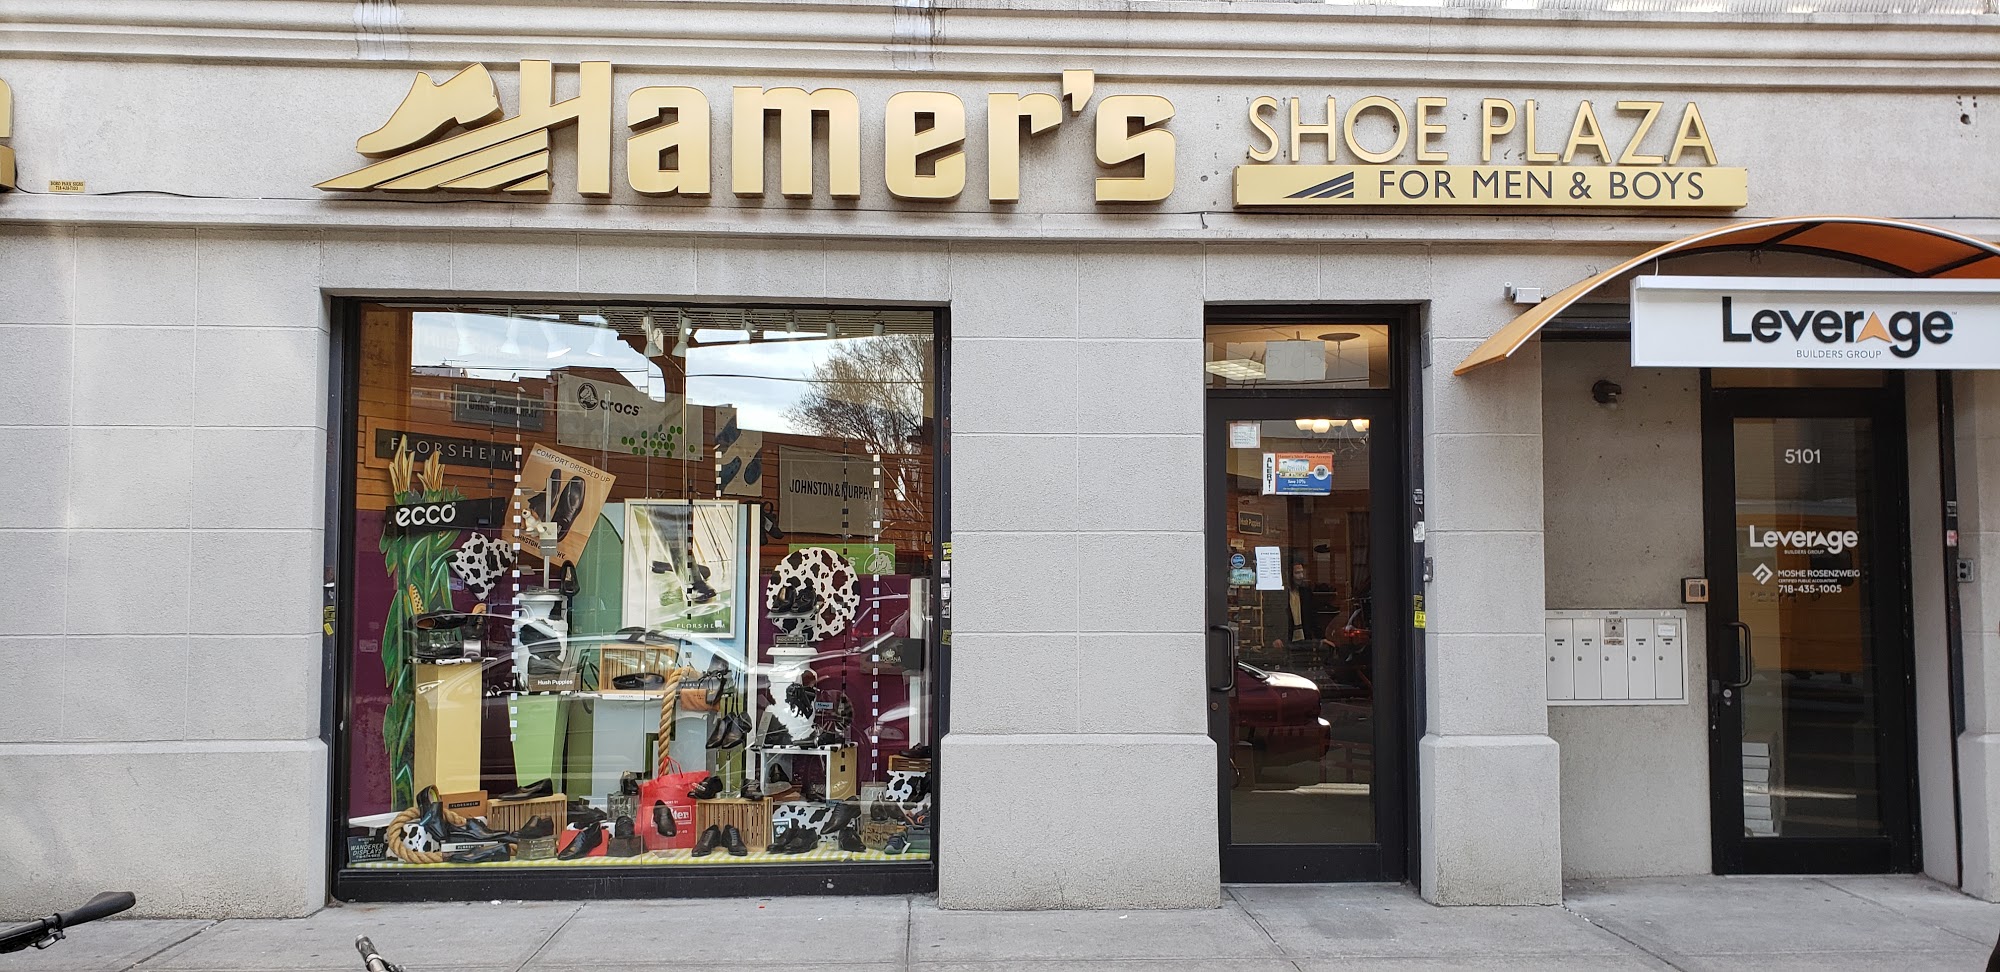 Hamer Shoe Plaza